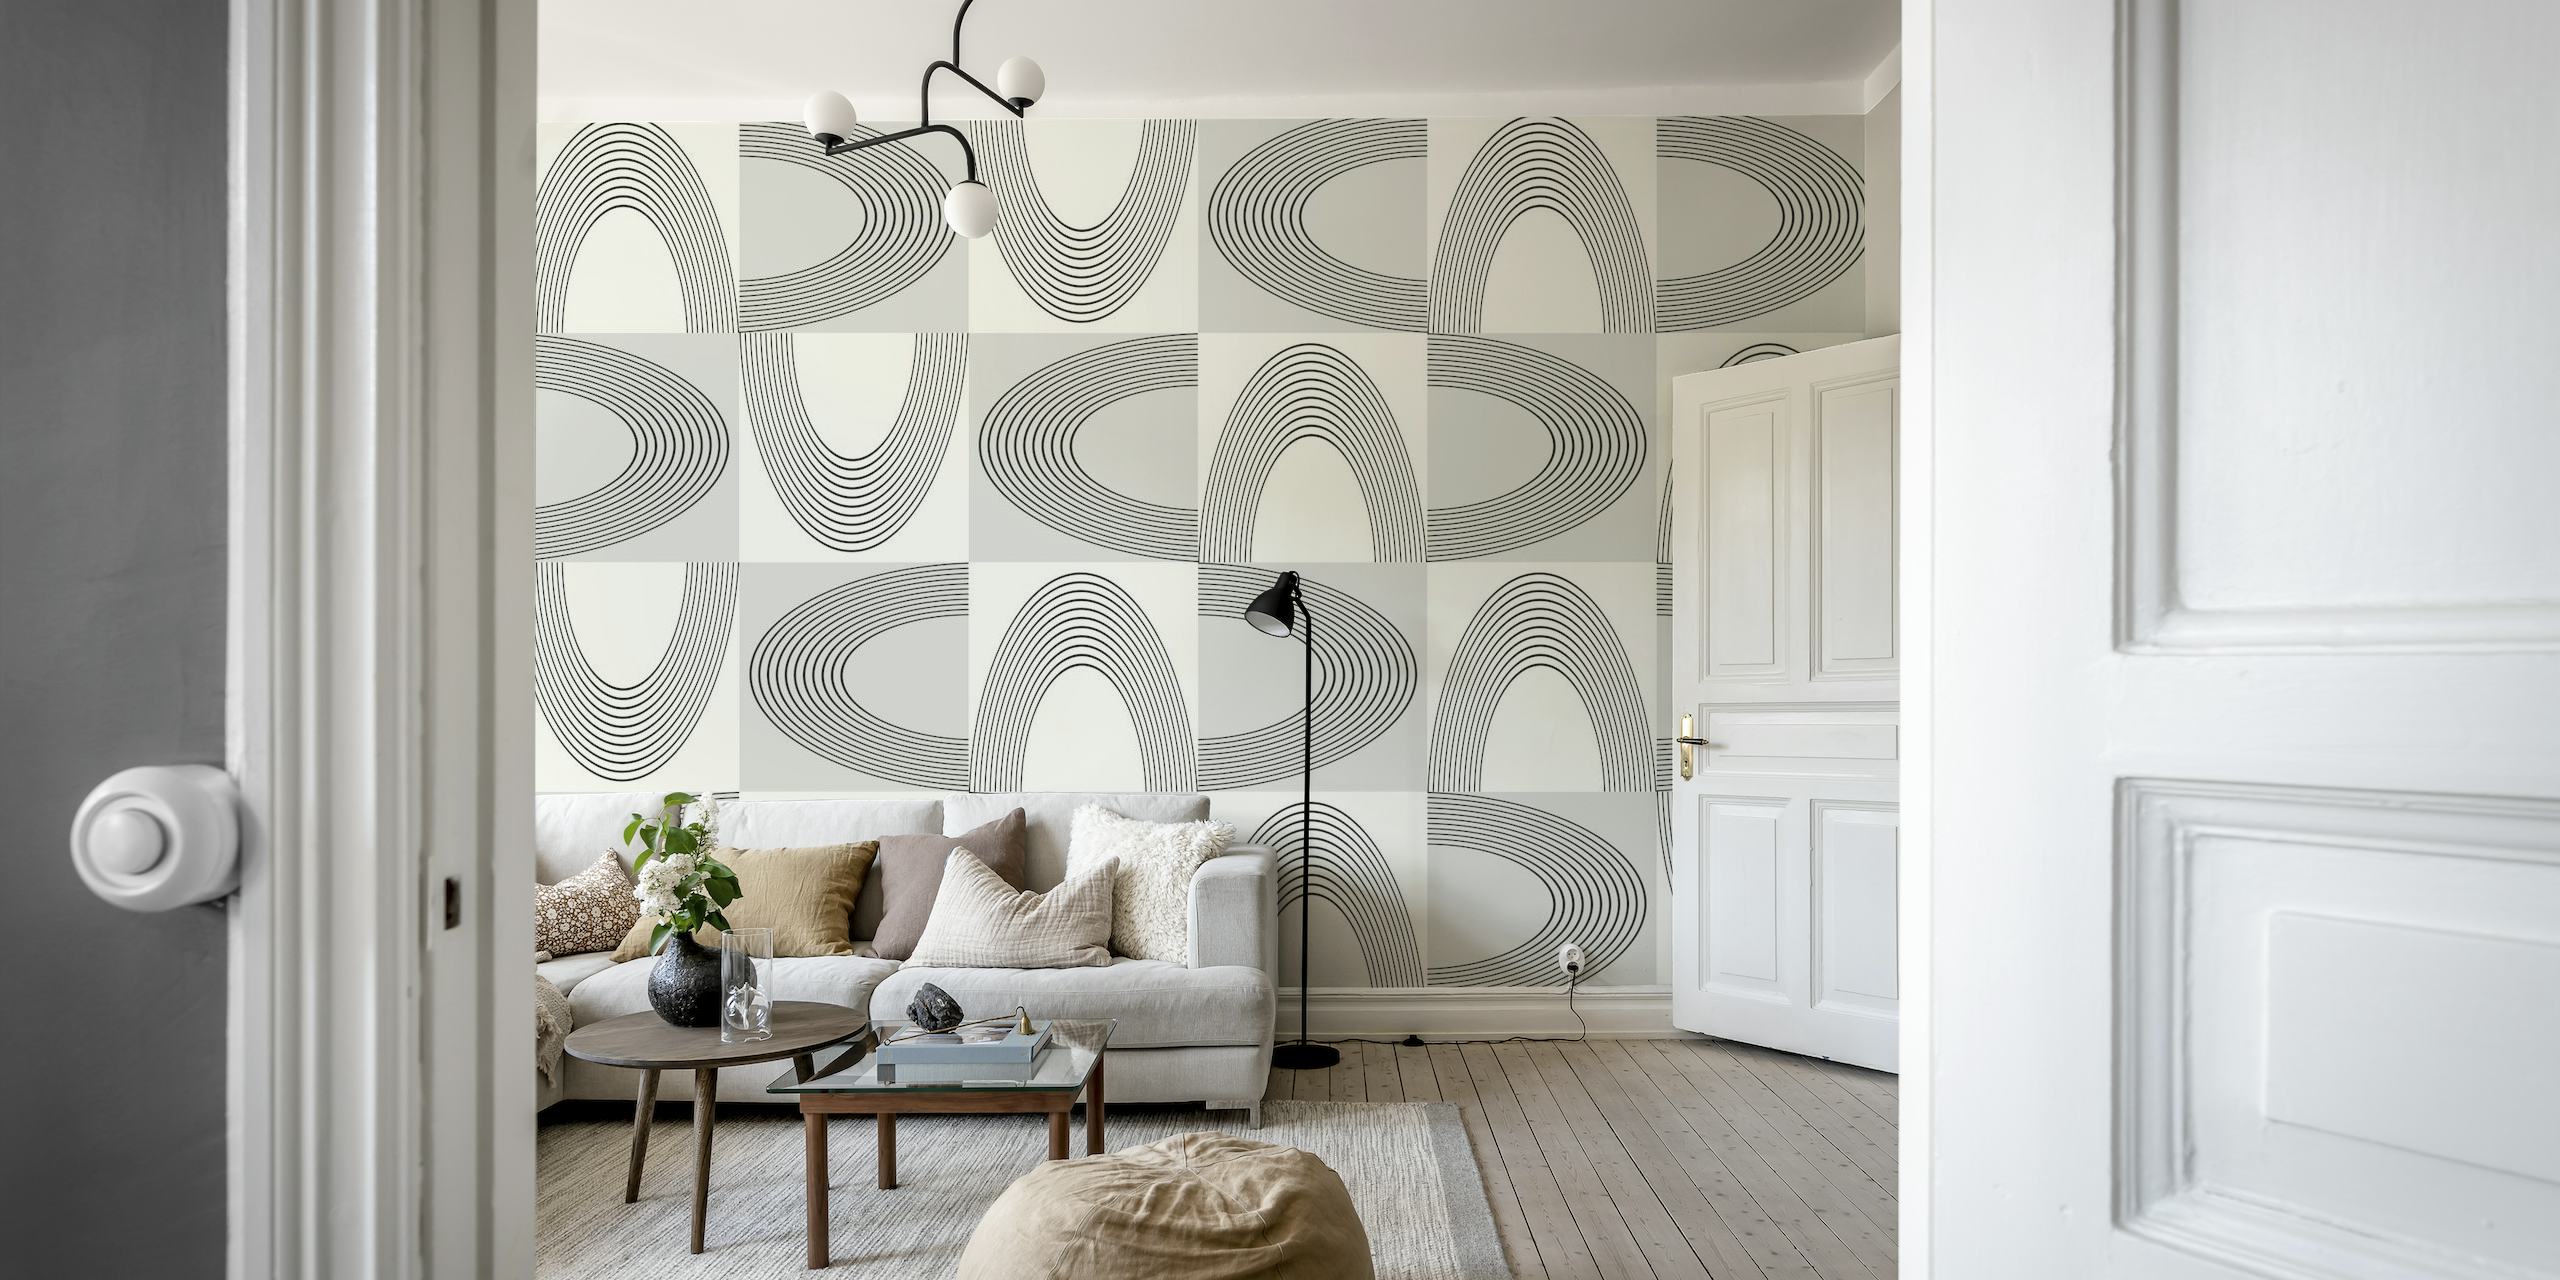 Vintage abstracte geometrische muurschildering met in elkaar grijpende vormen in grijs en gebroken wit